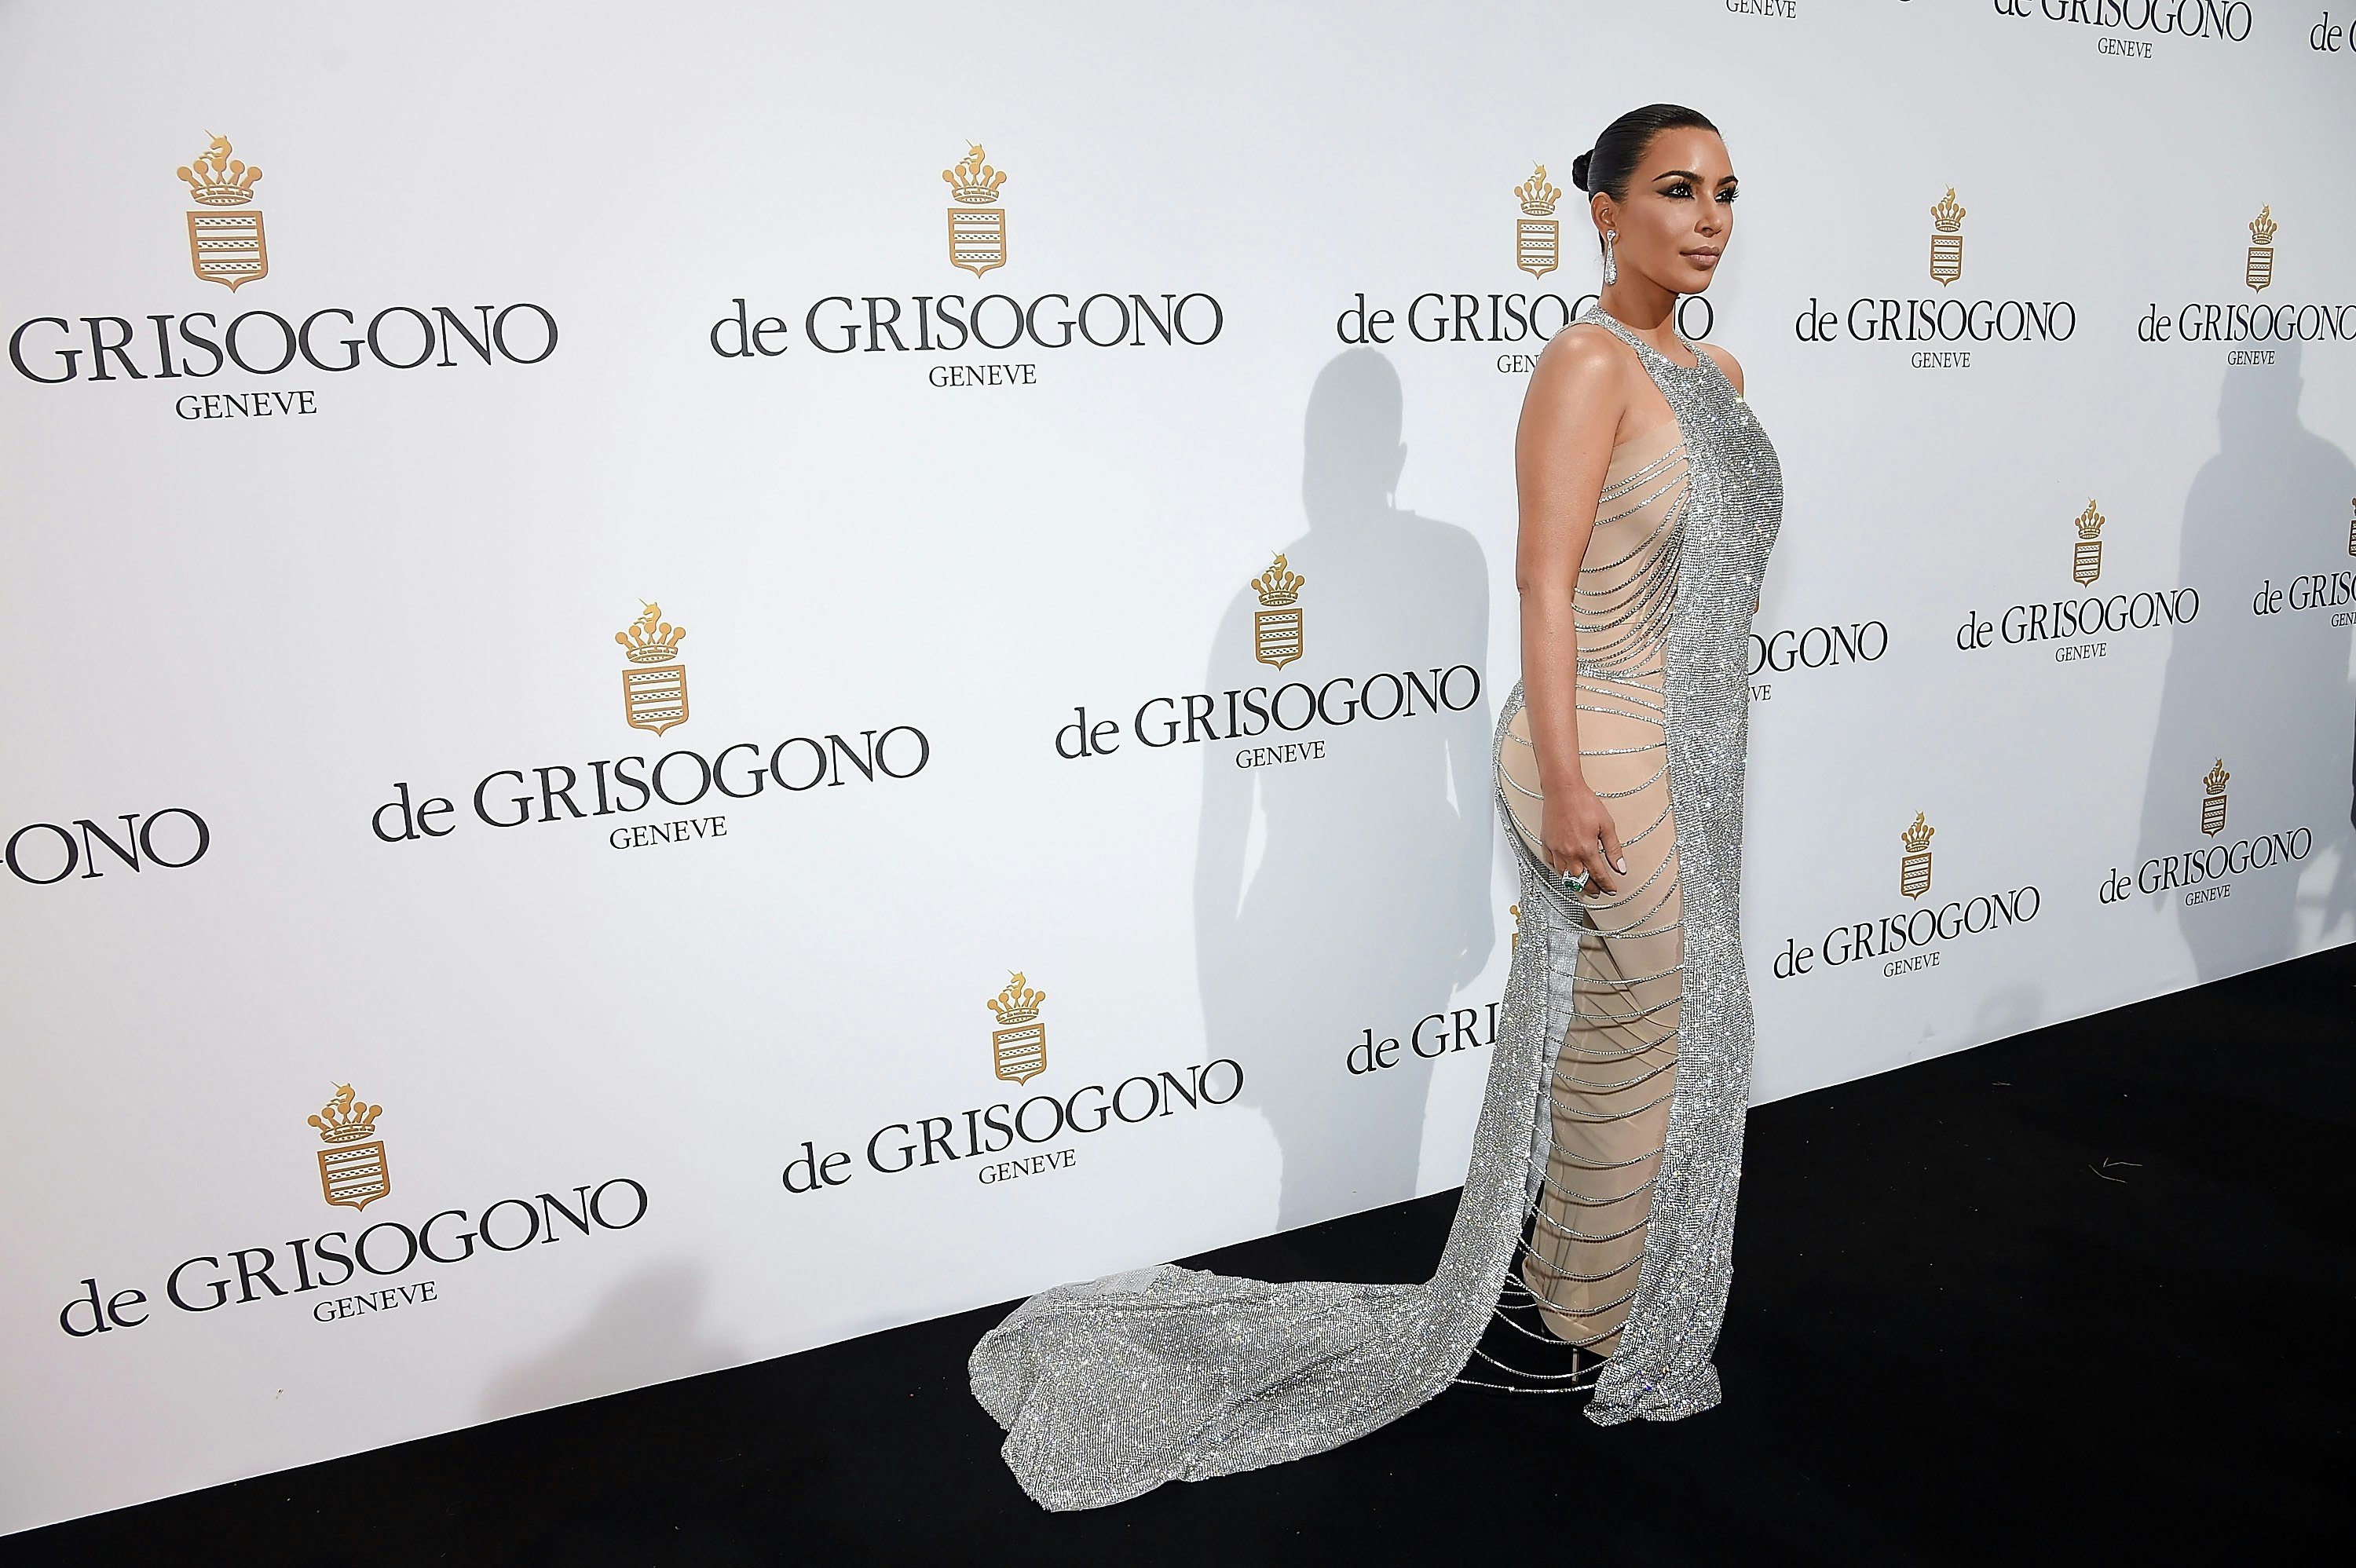 Kim Kardashian and Dolce & Gabbana: A Match Made in Marketing Heaven